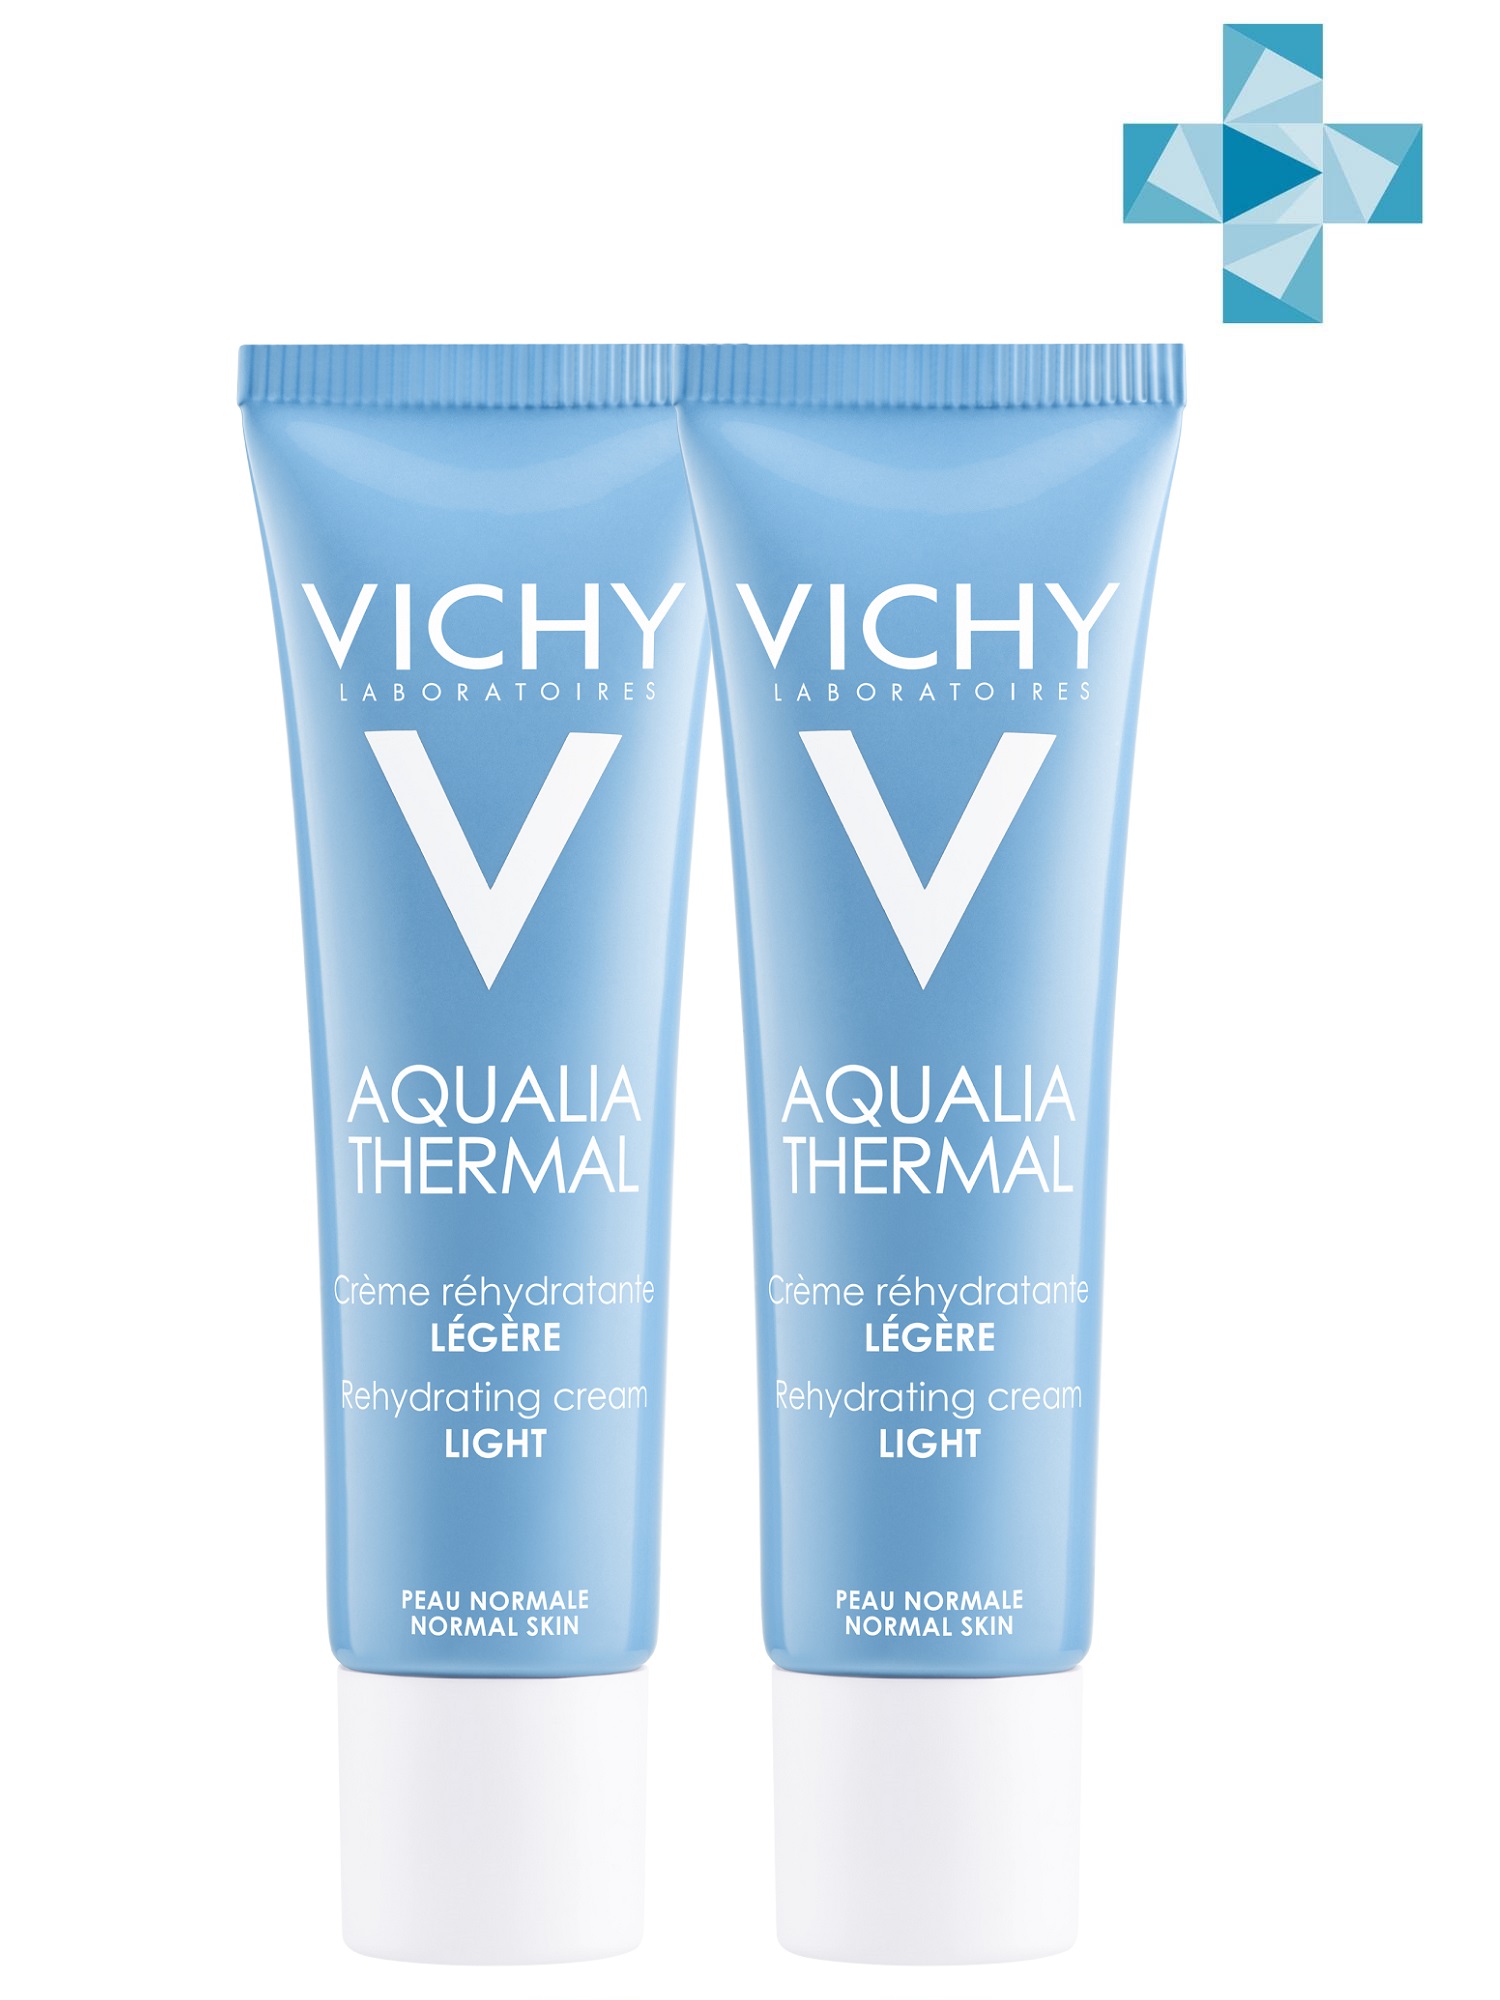 Vichy Комплект Аквалия Термаль Легкий крем для нормальной кожи, 2 шт. по 30 мл (Vichy, Aqualia Thermal) vichy аквалия термаль увлажняющая сыворотка для всех типов кожи 30 мл vichy aqualia thermal